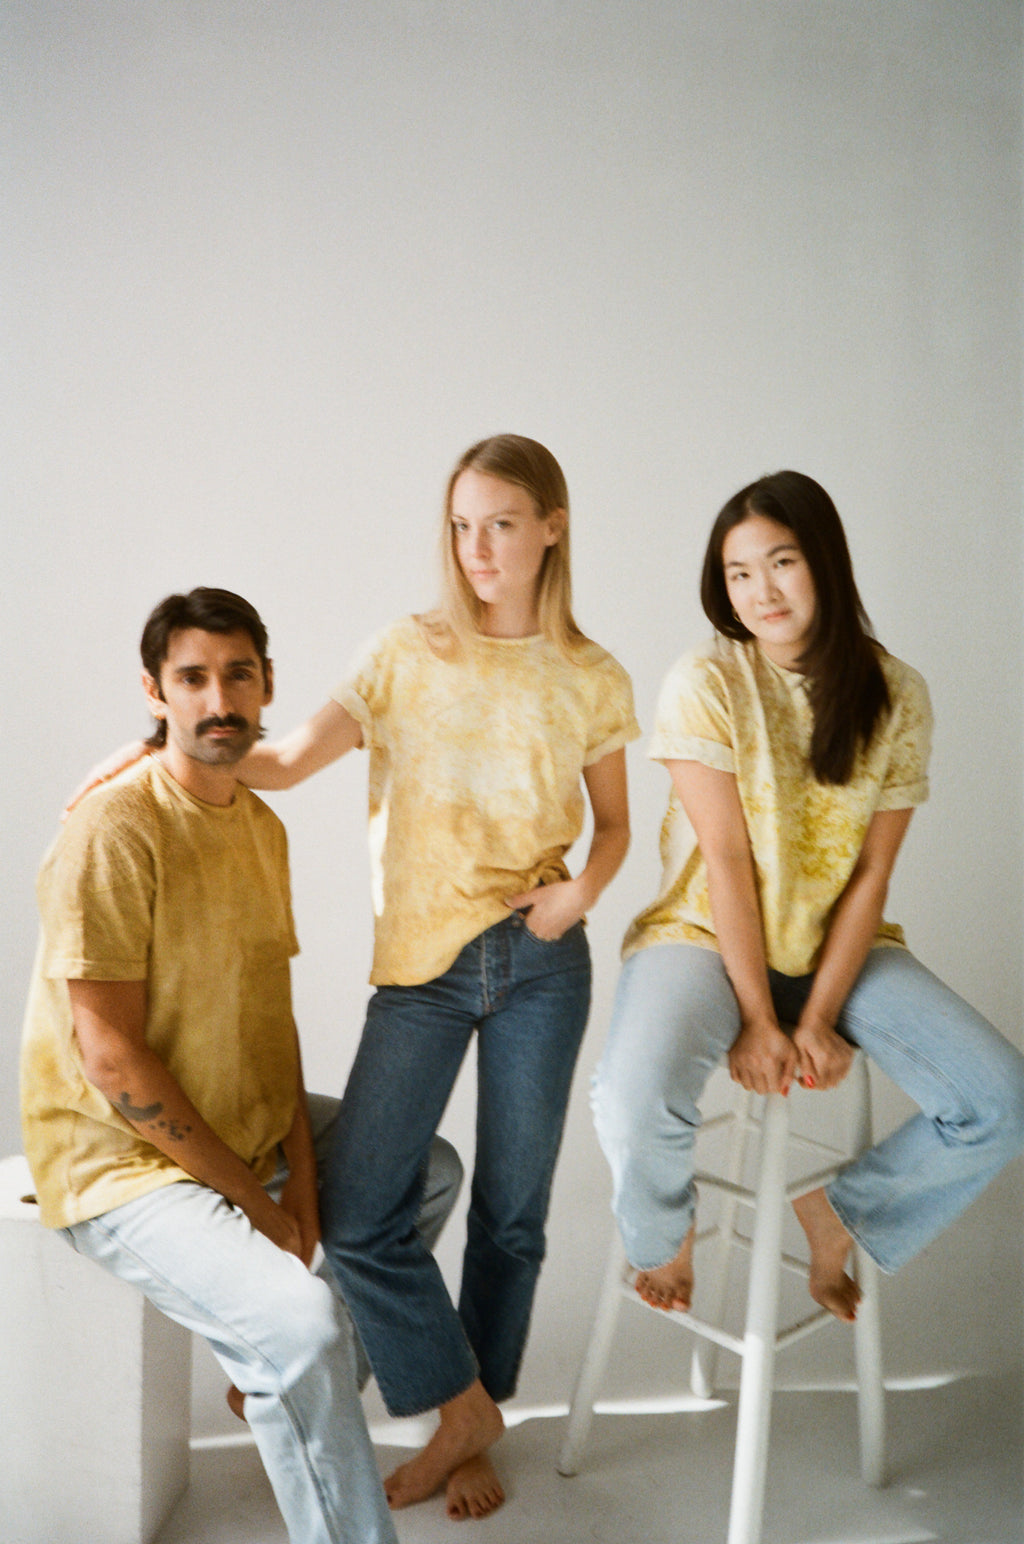 Margo New York sustainable fashion osage dyed tshirt embroidered